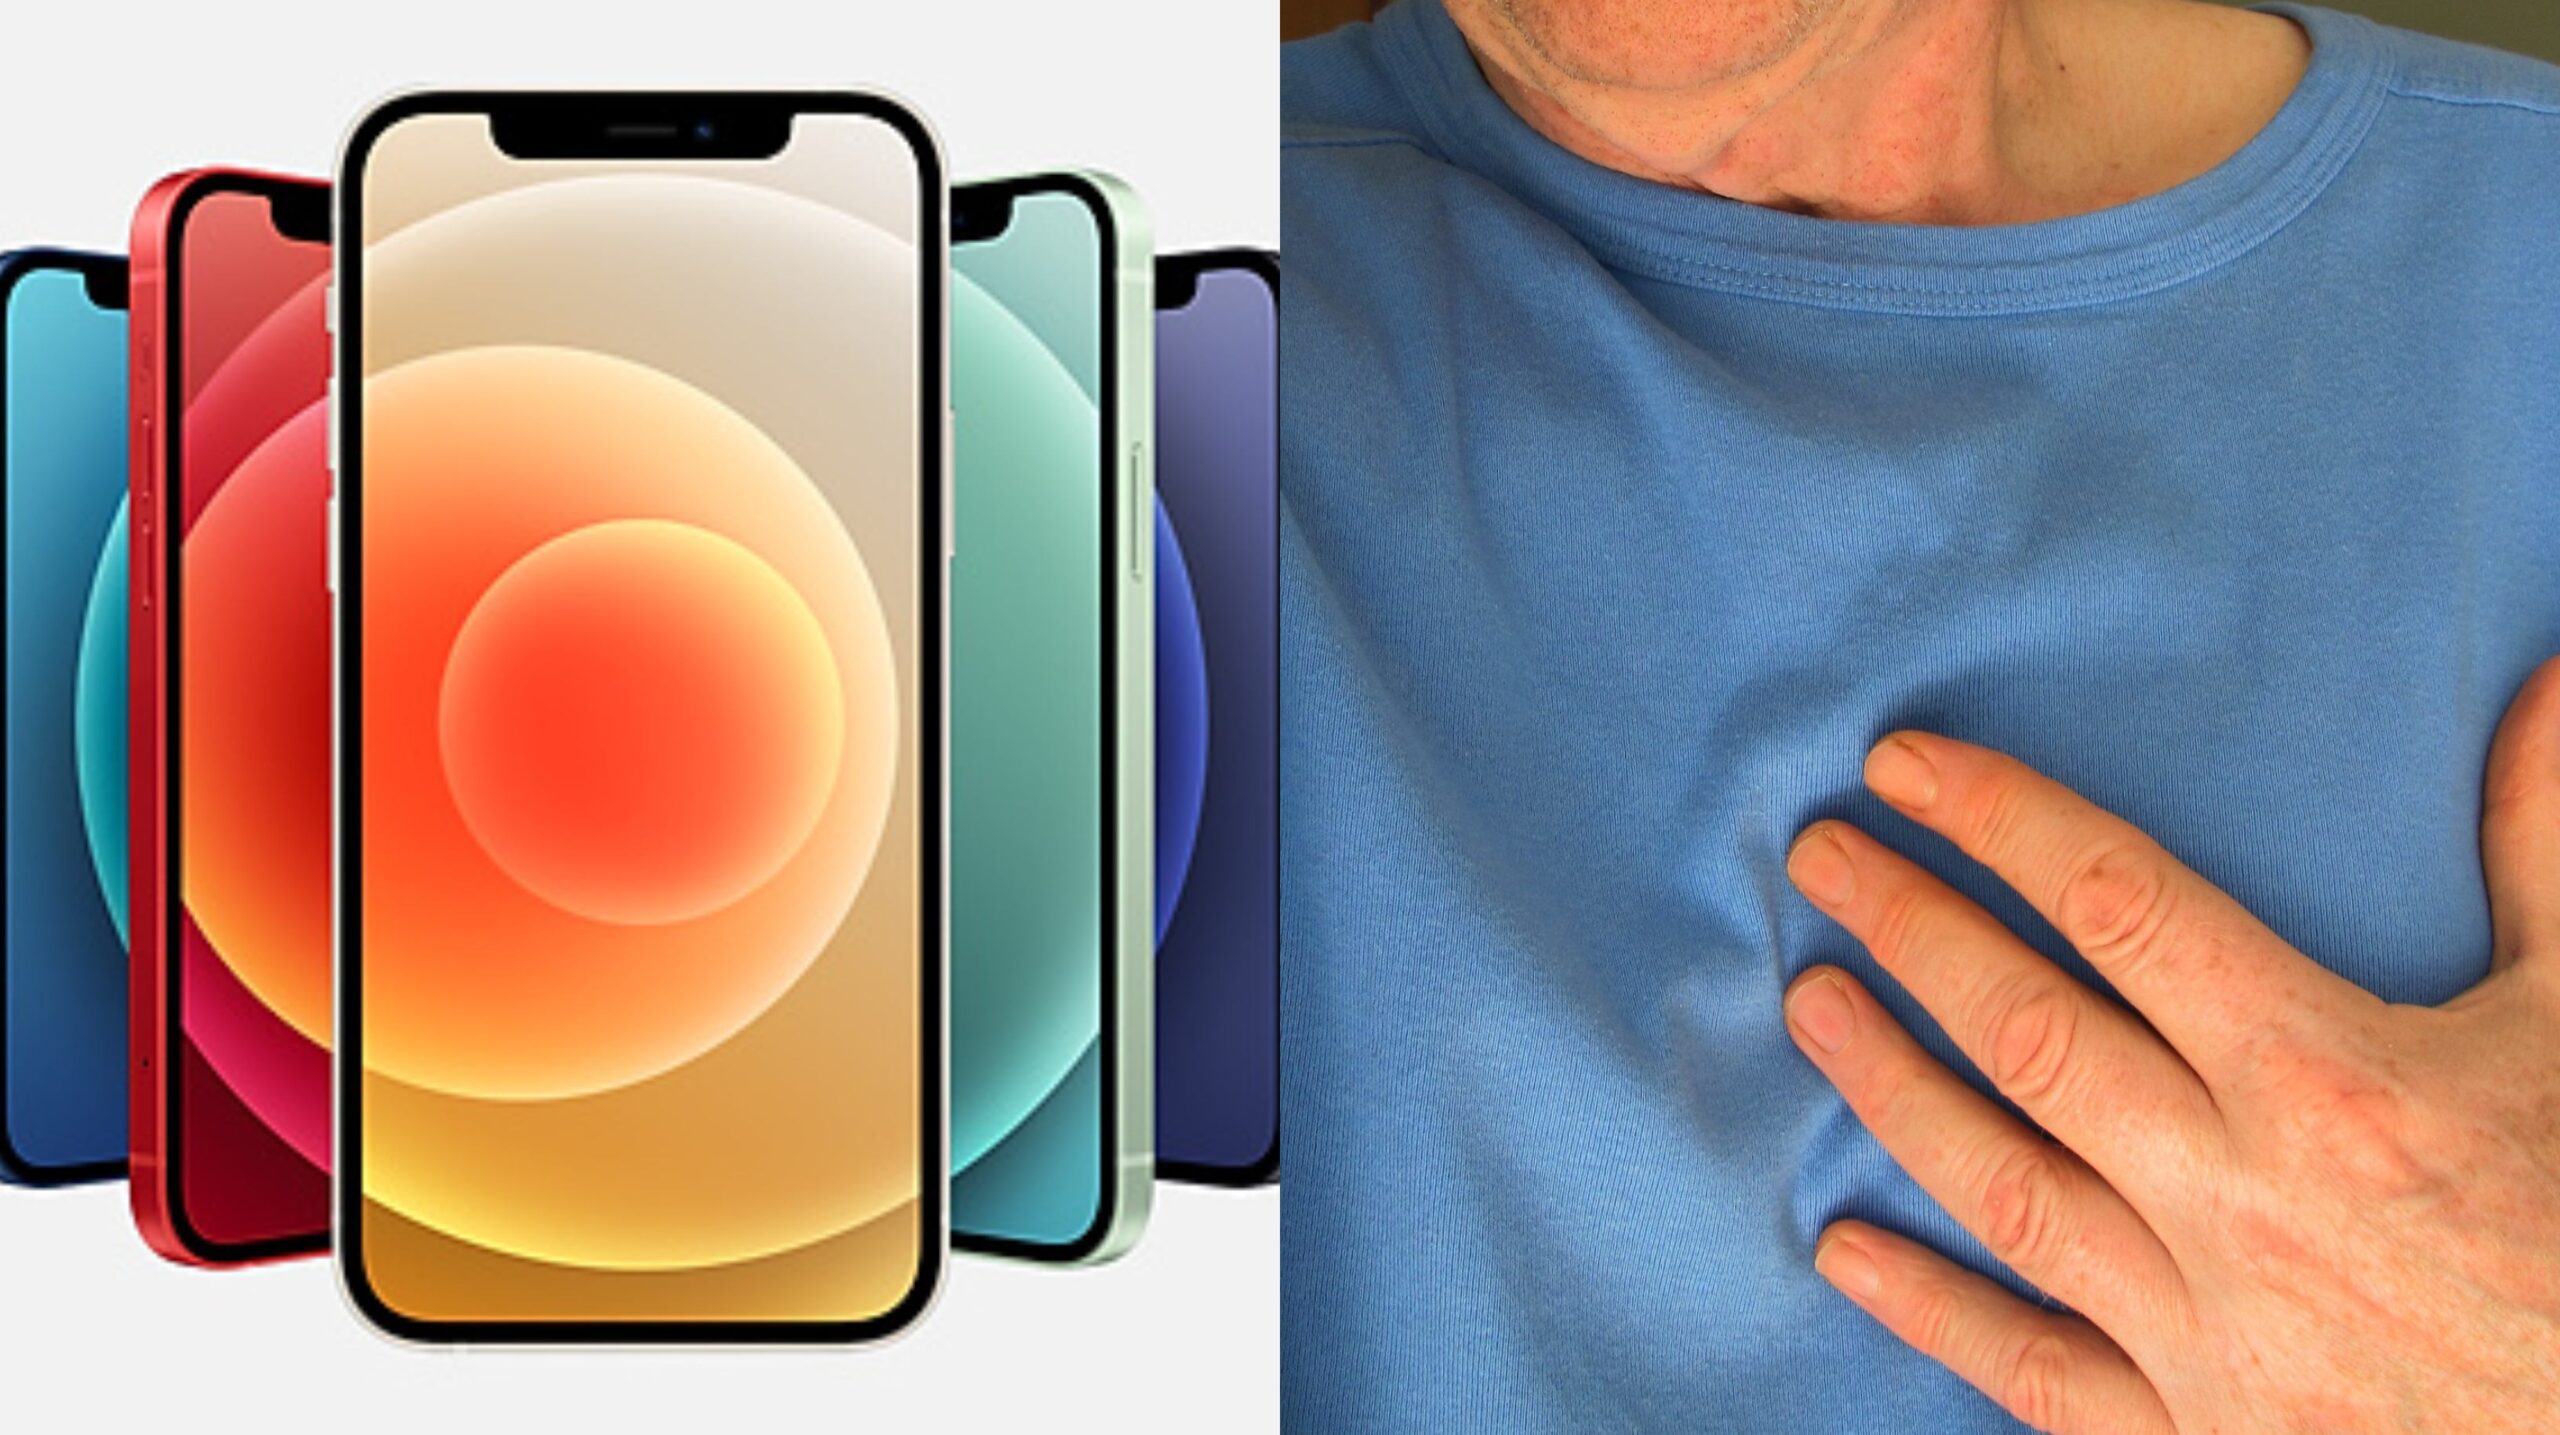 Apple iPhone 12 est nocif pour les personnes portant un stimulateur cardiaque et un défibrillateur